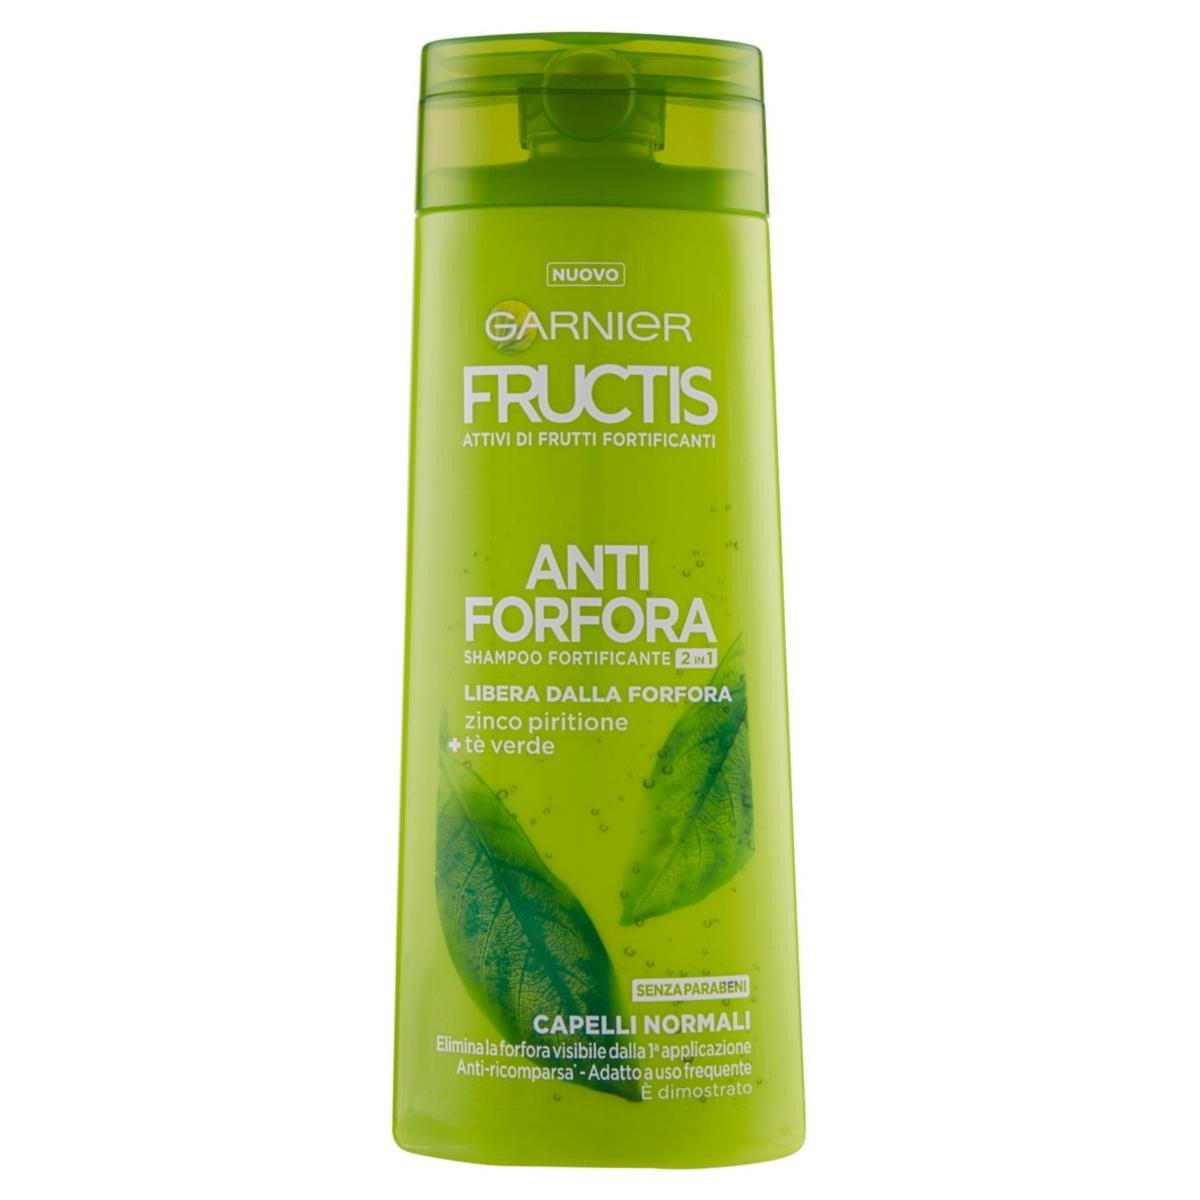 GARNIER Fructis Antiforfora - Shampoo fortificante per capelli normali - 250 ml